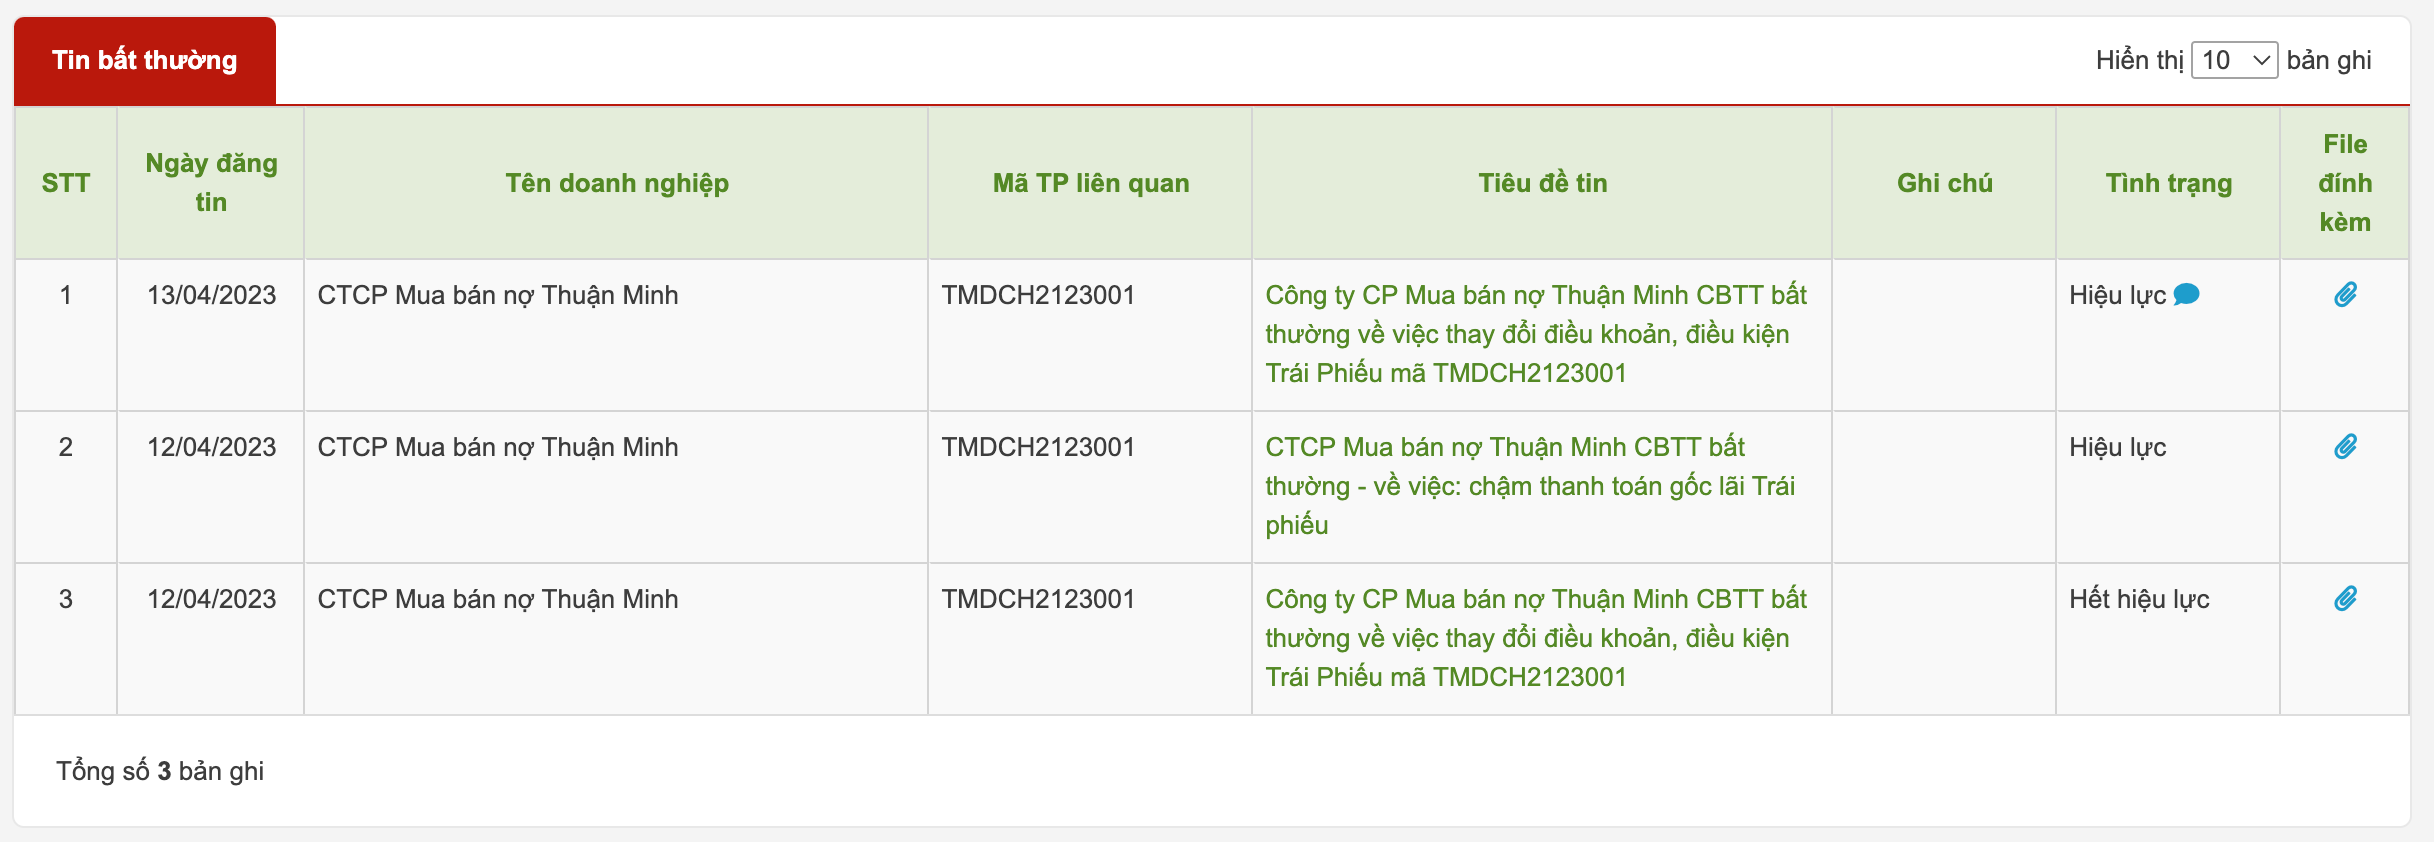 Công ty Thuận Minh liên tiếp công bố thông tin bất thường về chậm trả lãi, gốc trái phiếu. Ảnh chụp màn hình.